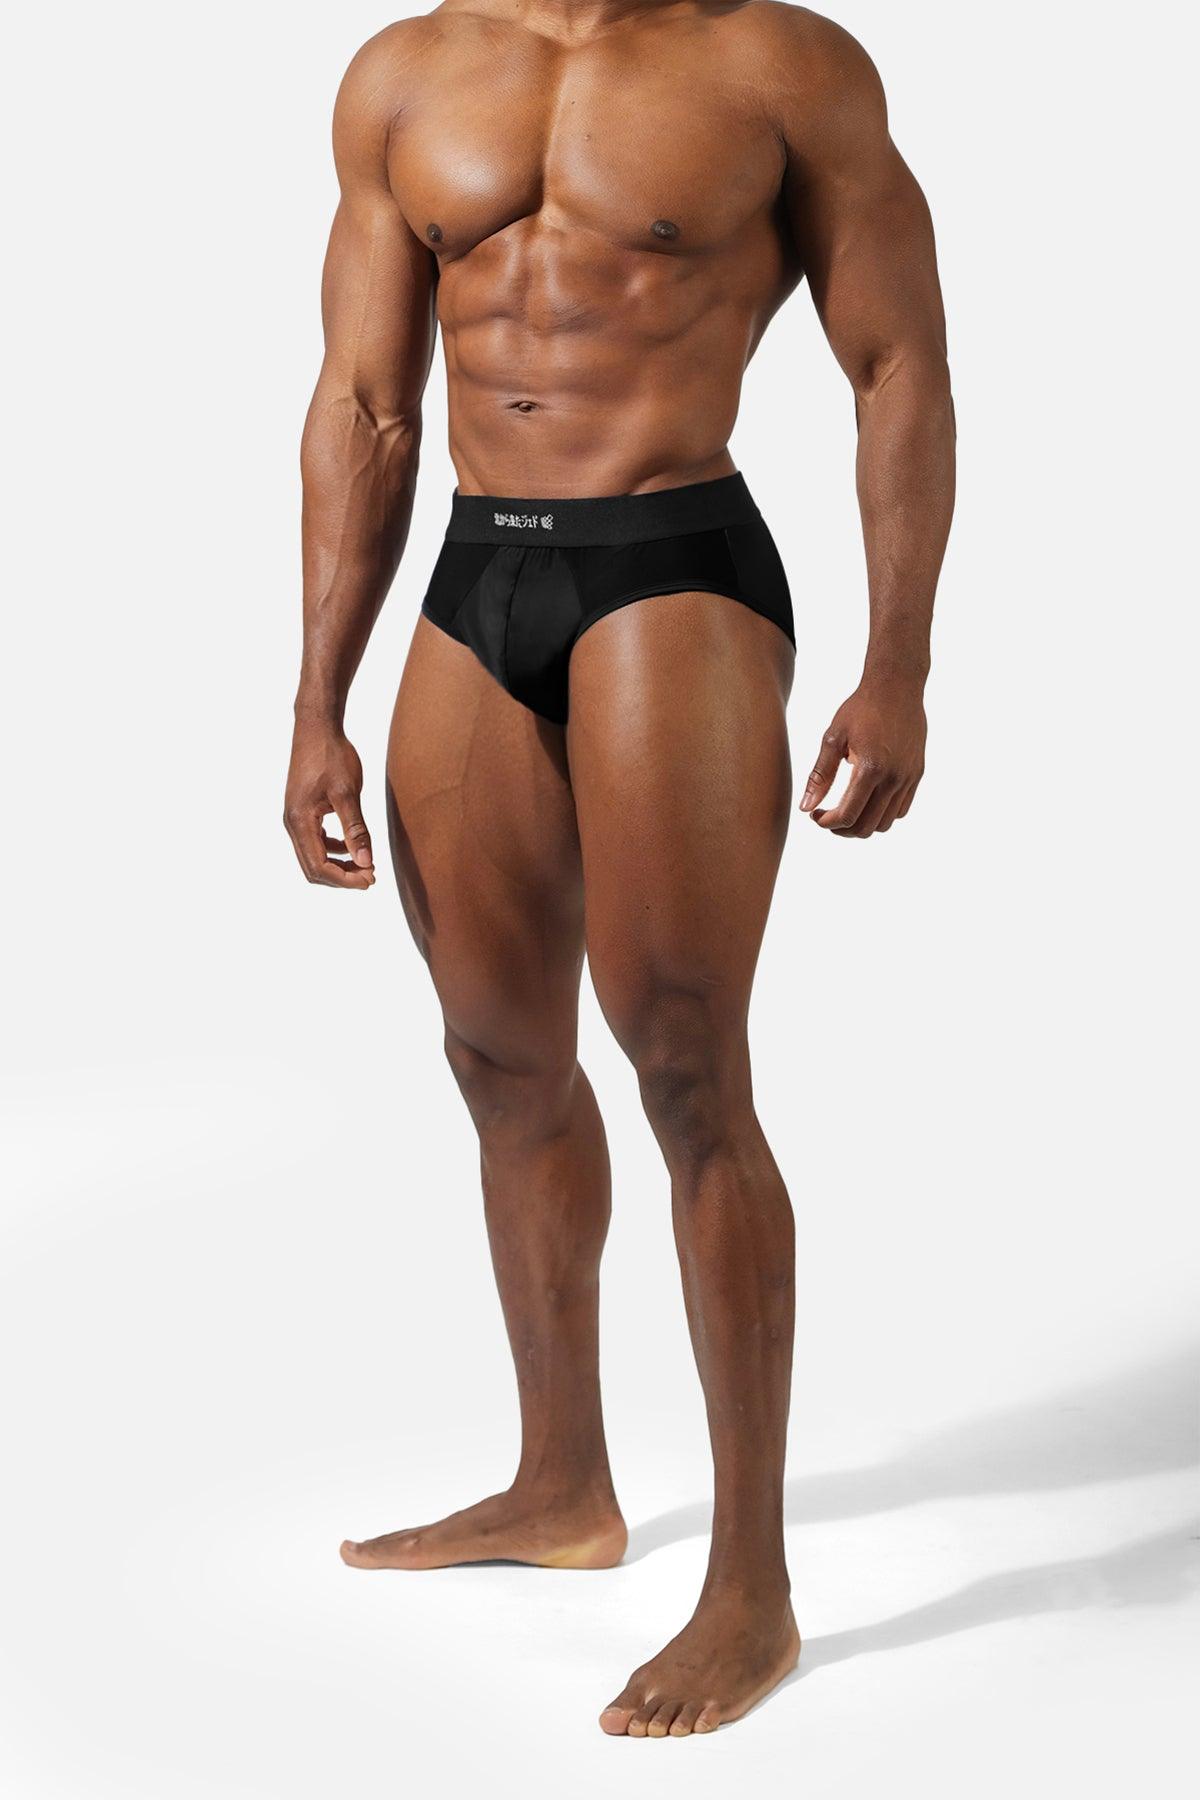 Cathalem Bonds Underwear Men Underwear Large Comfortable Mesh Underwear  Style Men's Size Breathable Men Bikini Underwear Underpants Black X-Large 